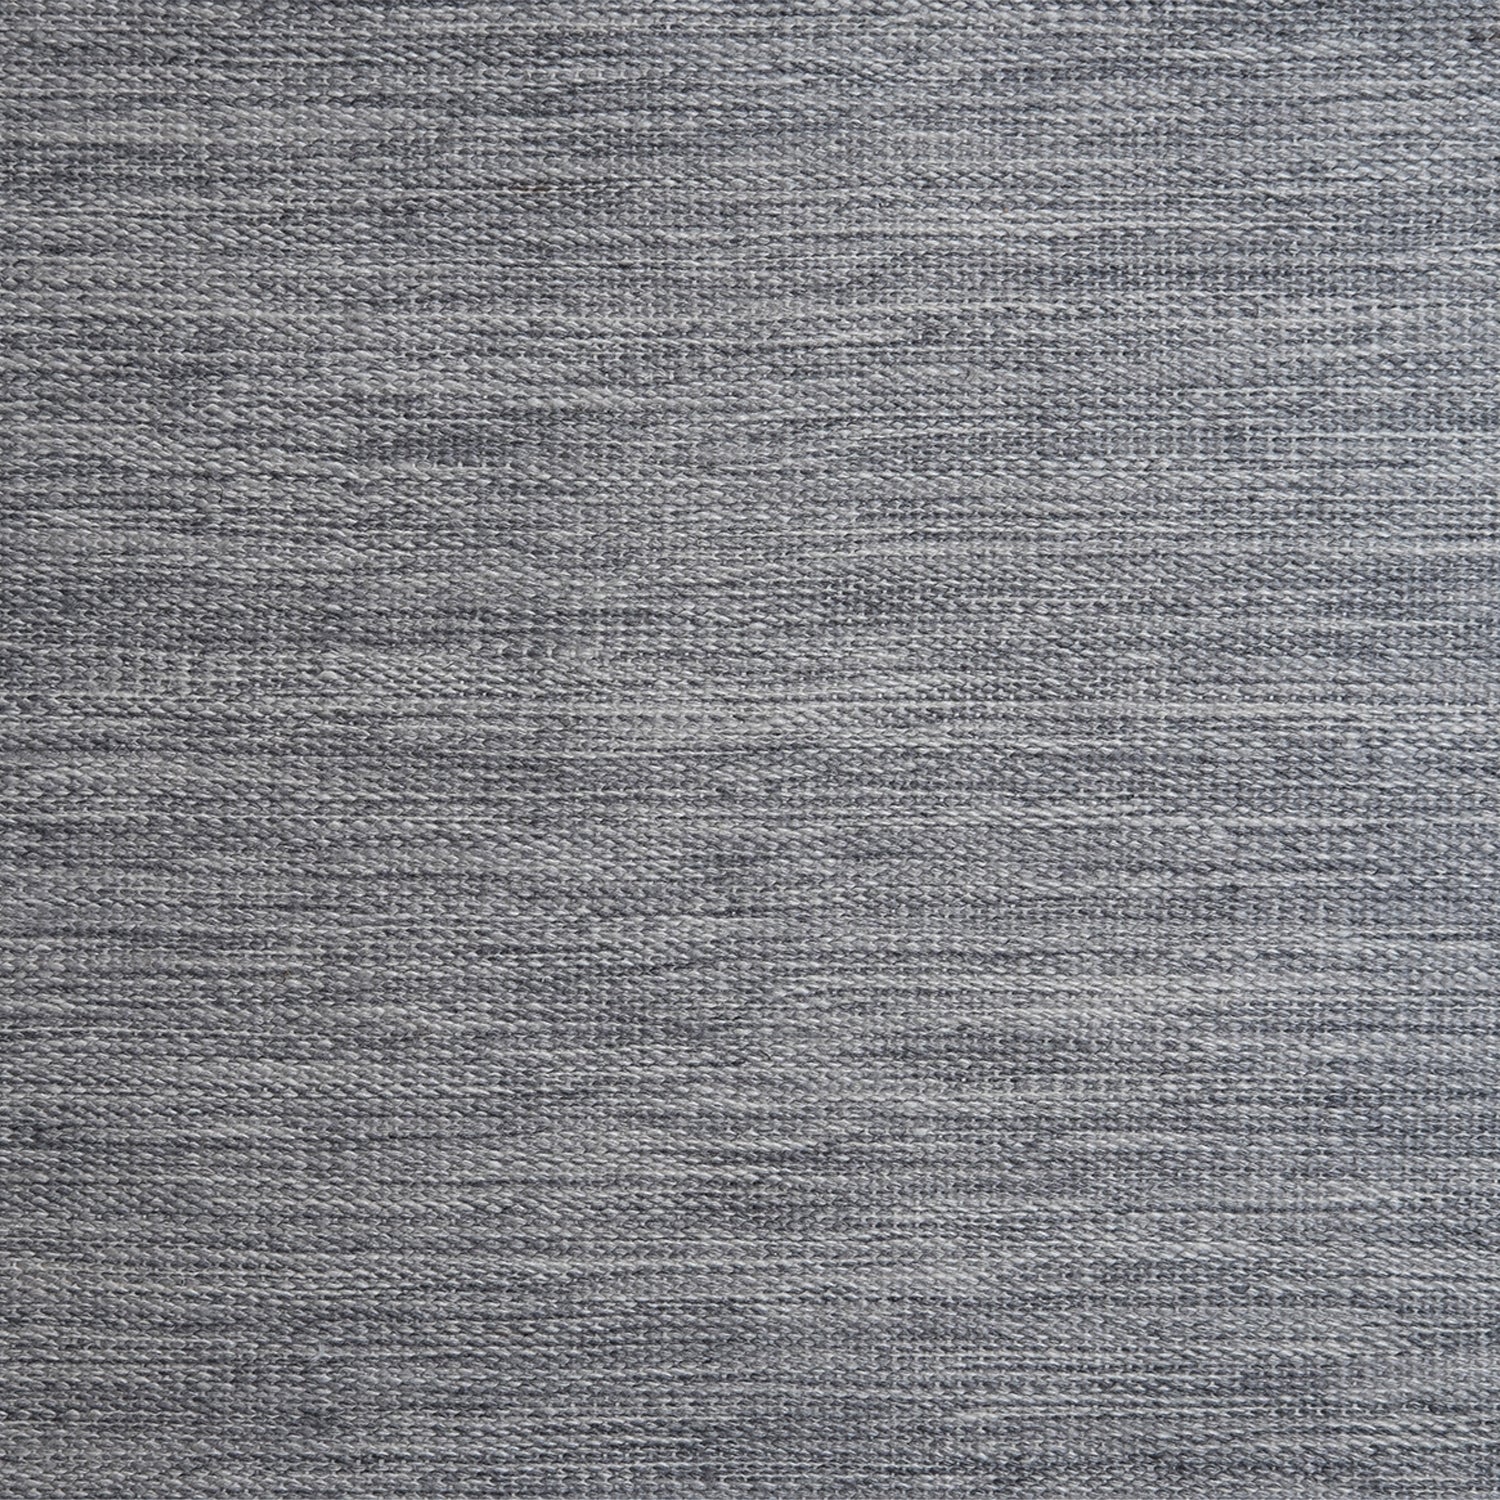 Outdoor broadloom carpet swatch in a flat weave in mottled gray.